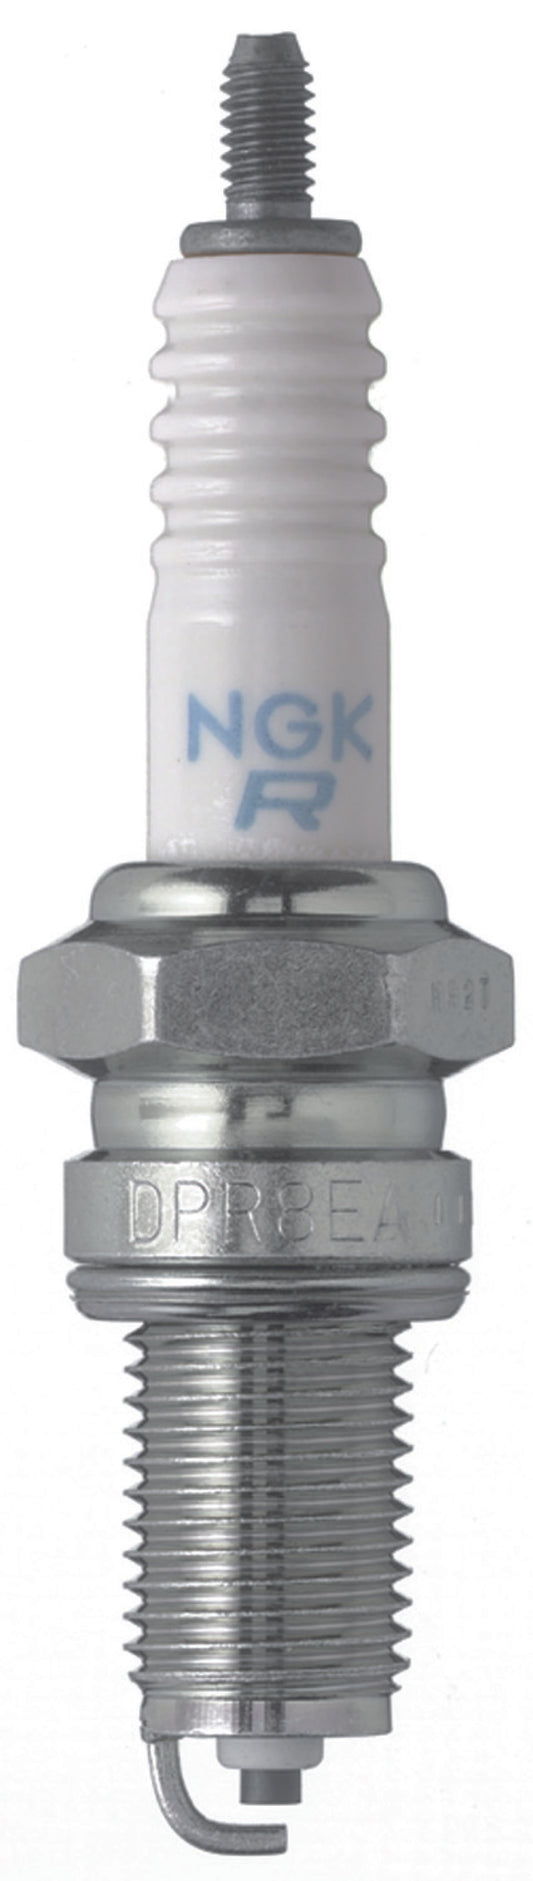 NGK Standard Spark Plug Box of 10 (DPR7EA-9)